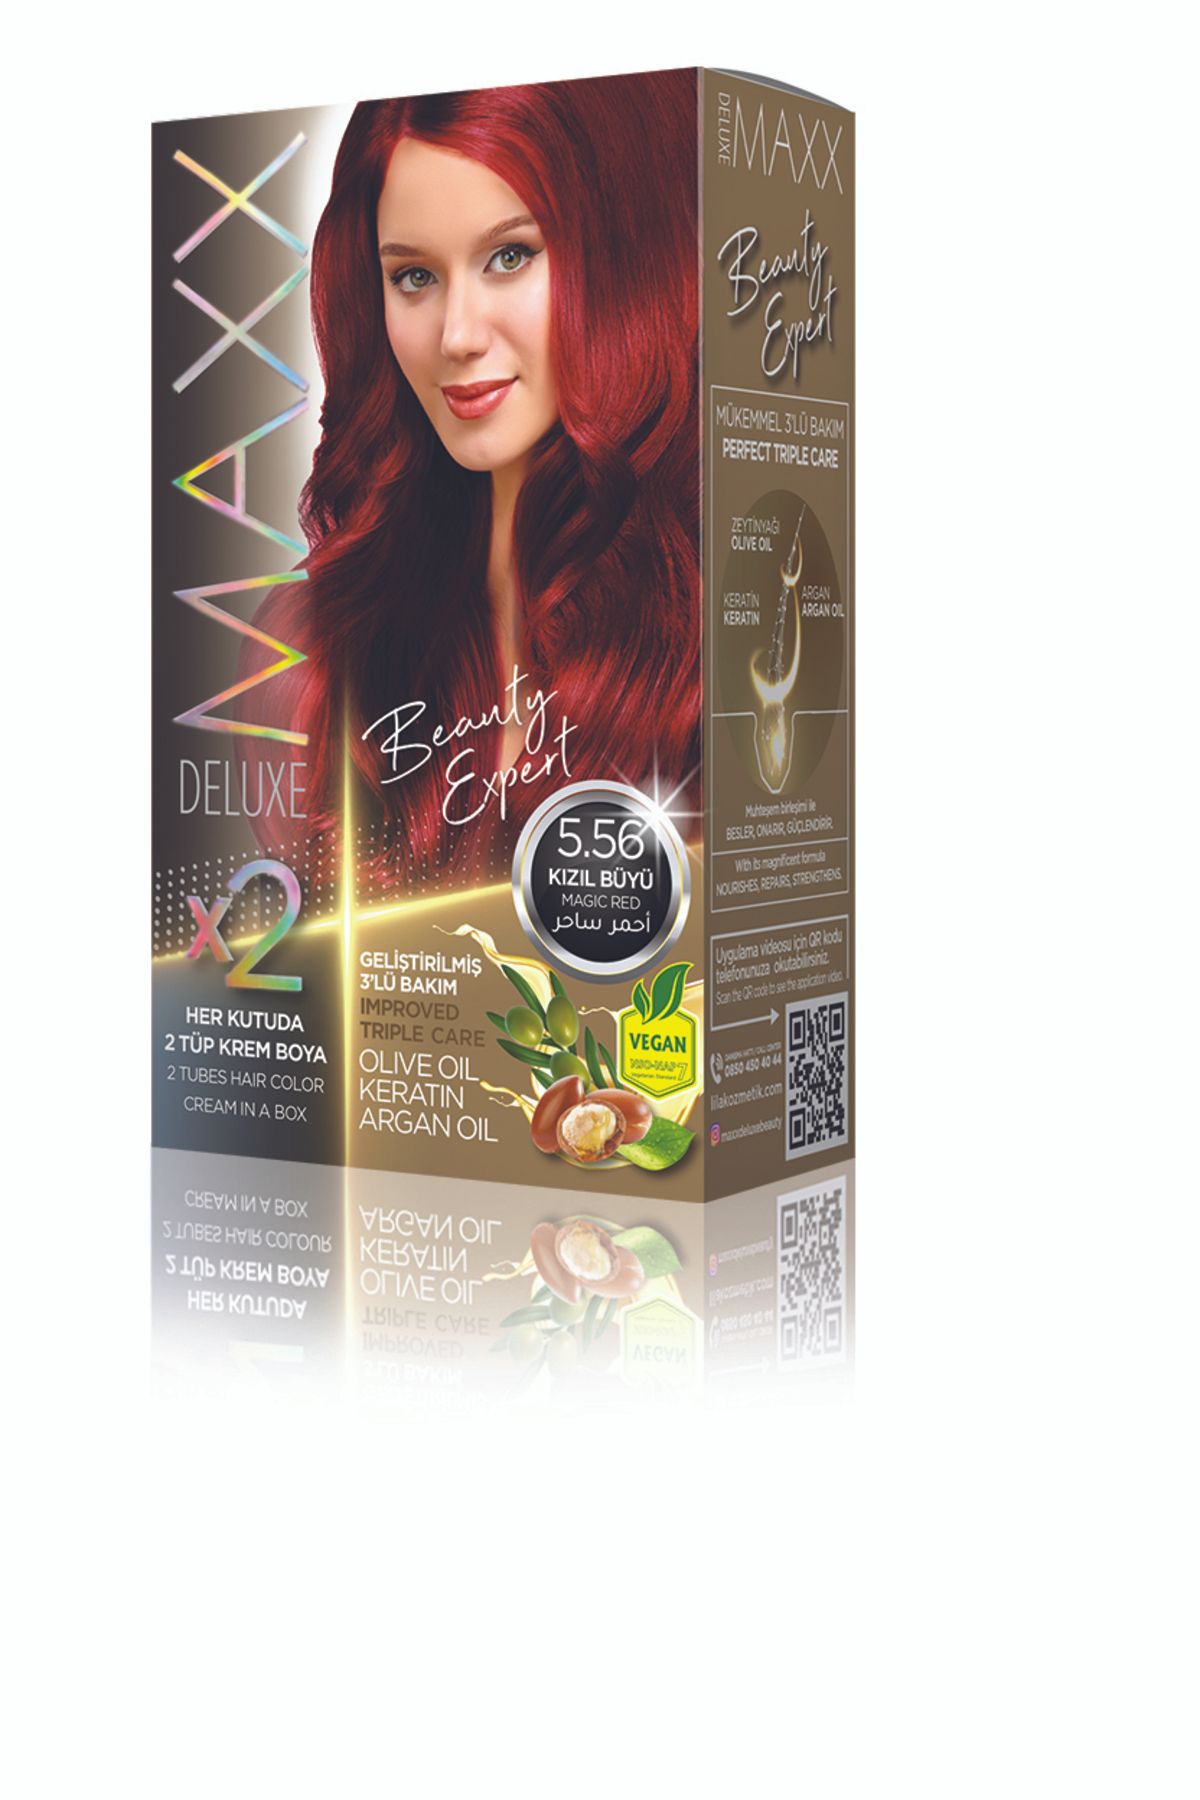 MAXX DELUXE Beauty Serıes Keratinli Kalıcı Saç Boyası Kutulardaki Şifre Ile Bmw 1.16 Çekilişine Katılmayı Unutma